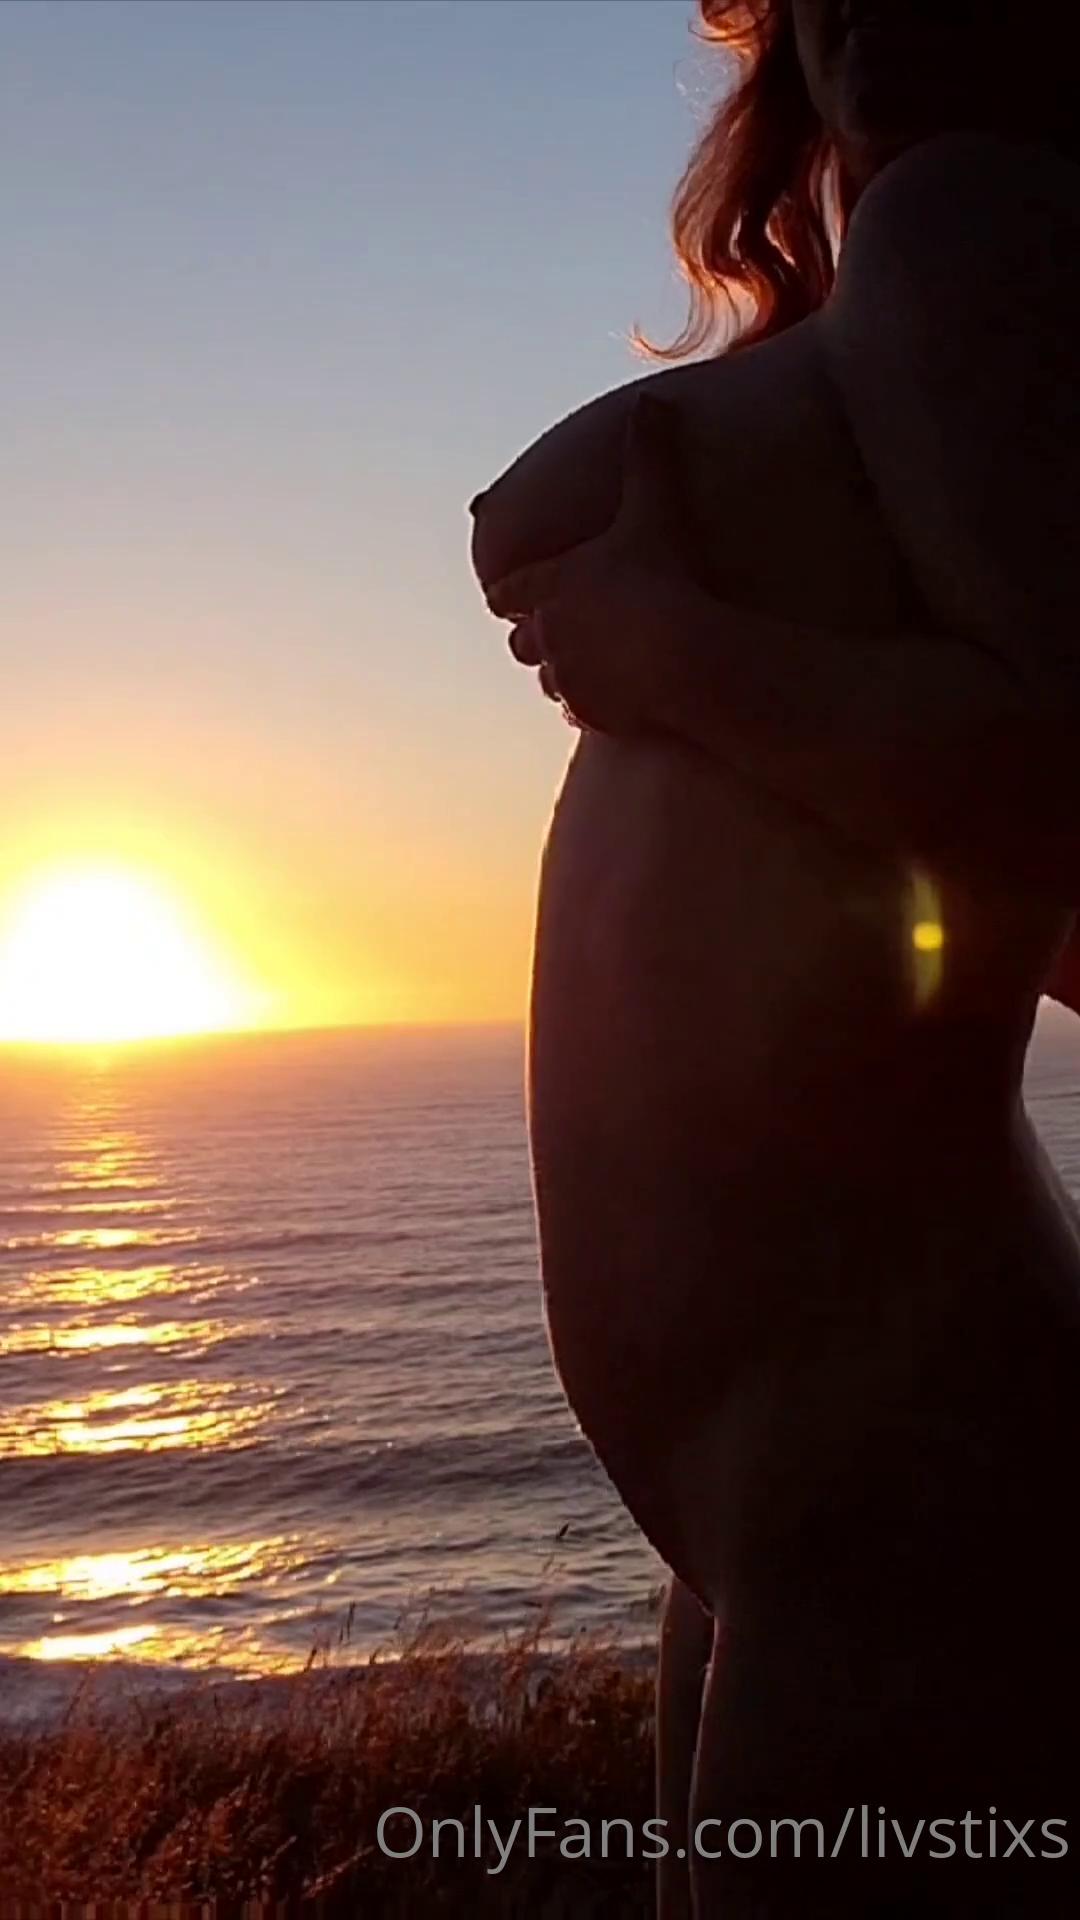 Livstixs Nude Sunset Onlyfans Video Leaked.